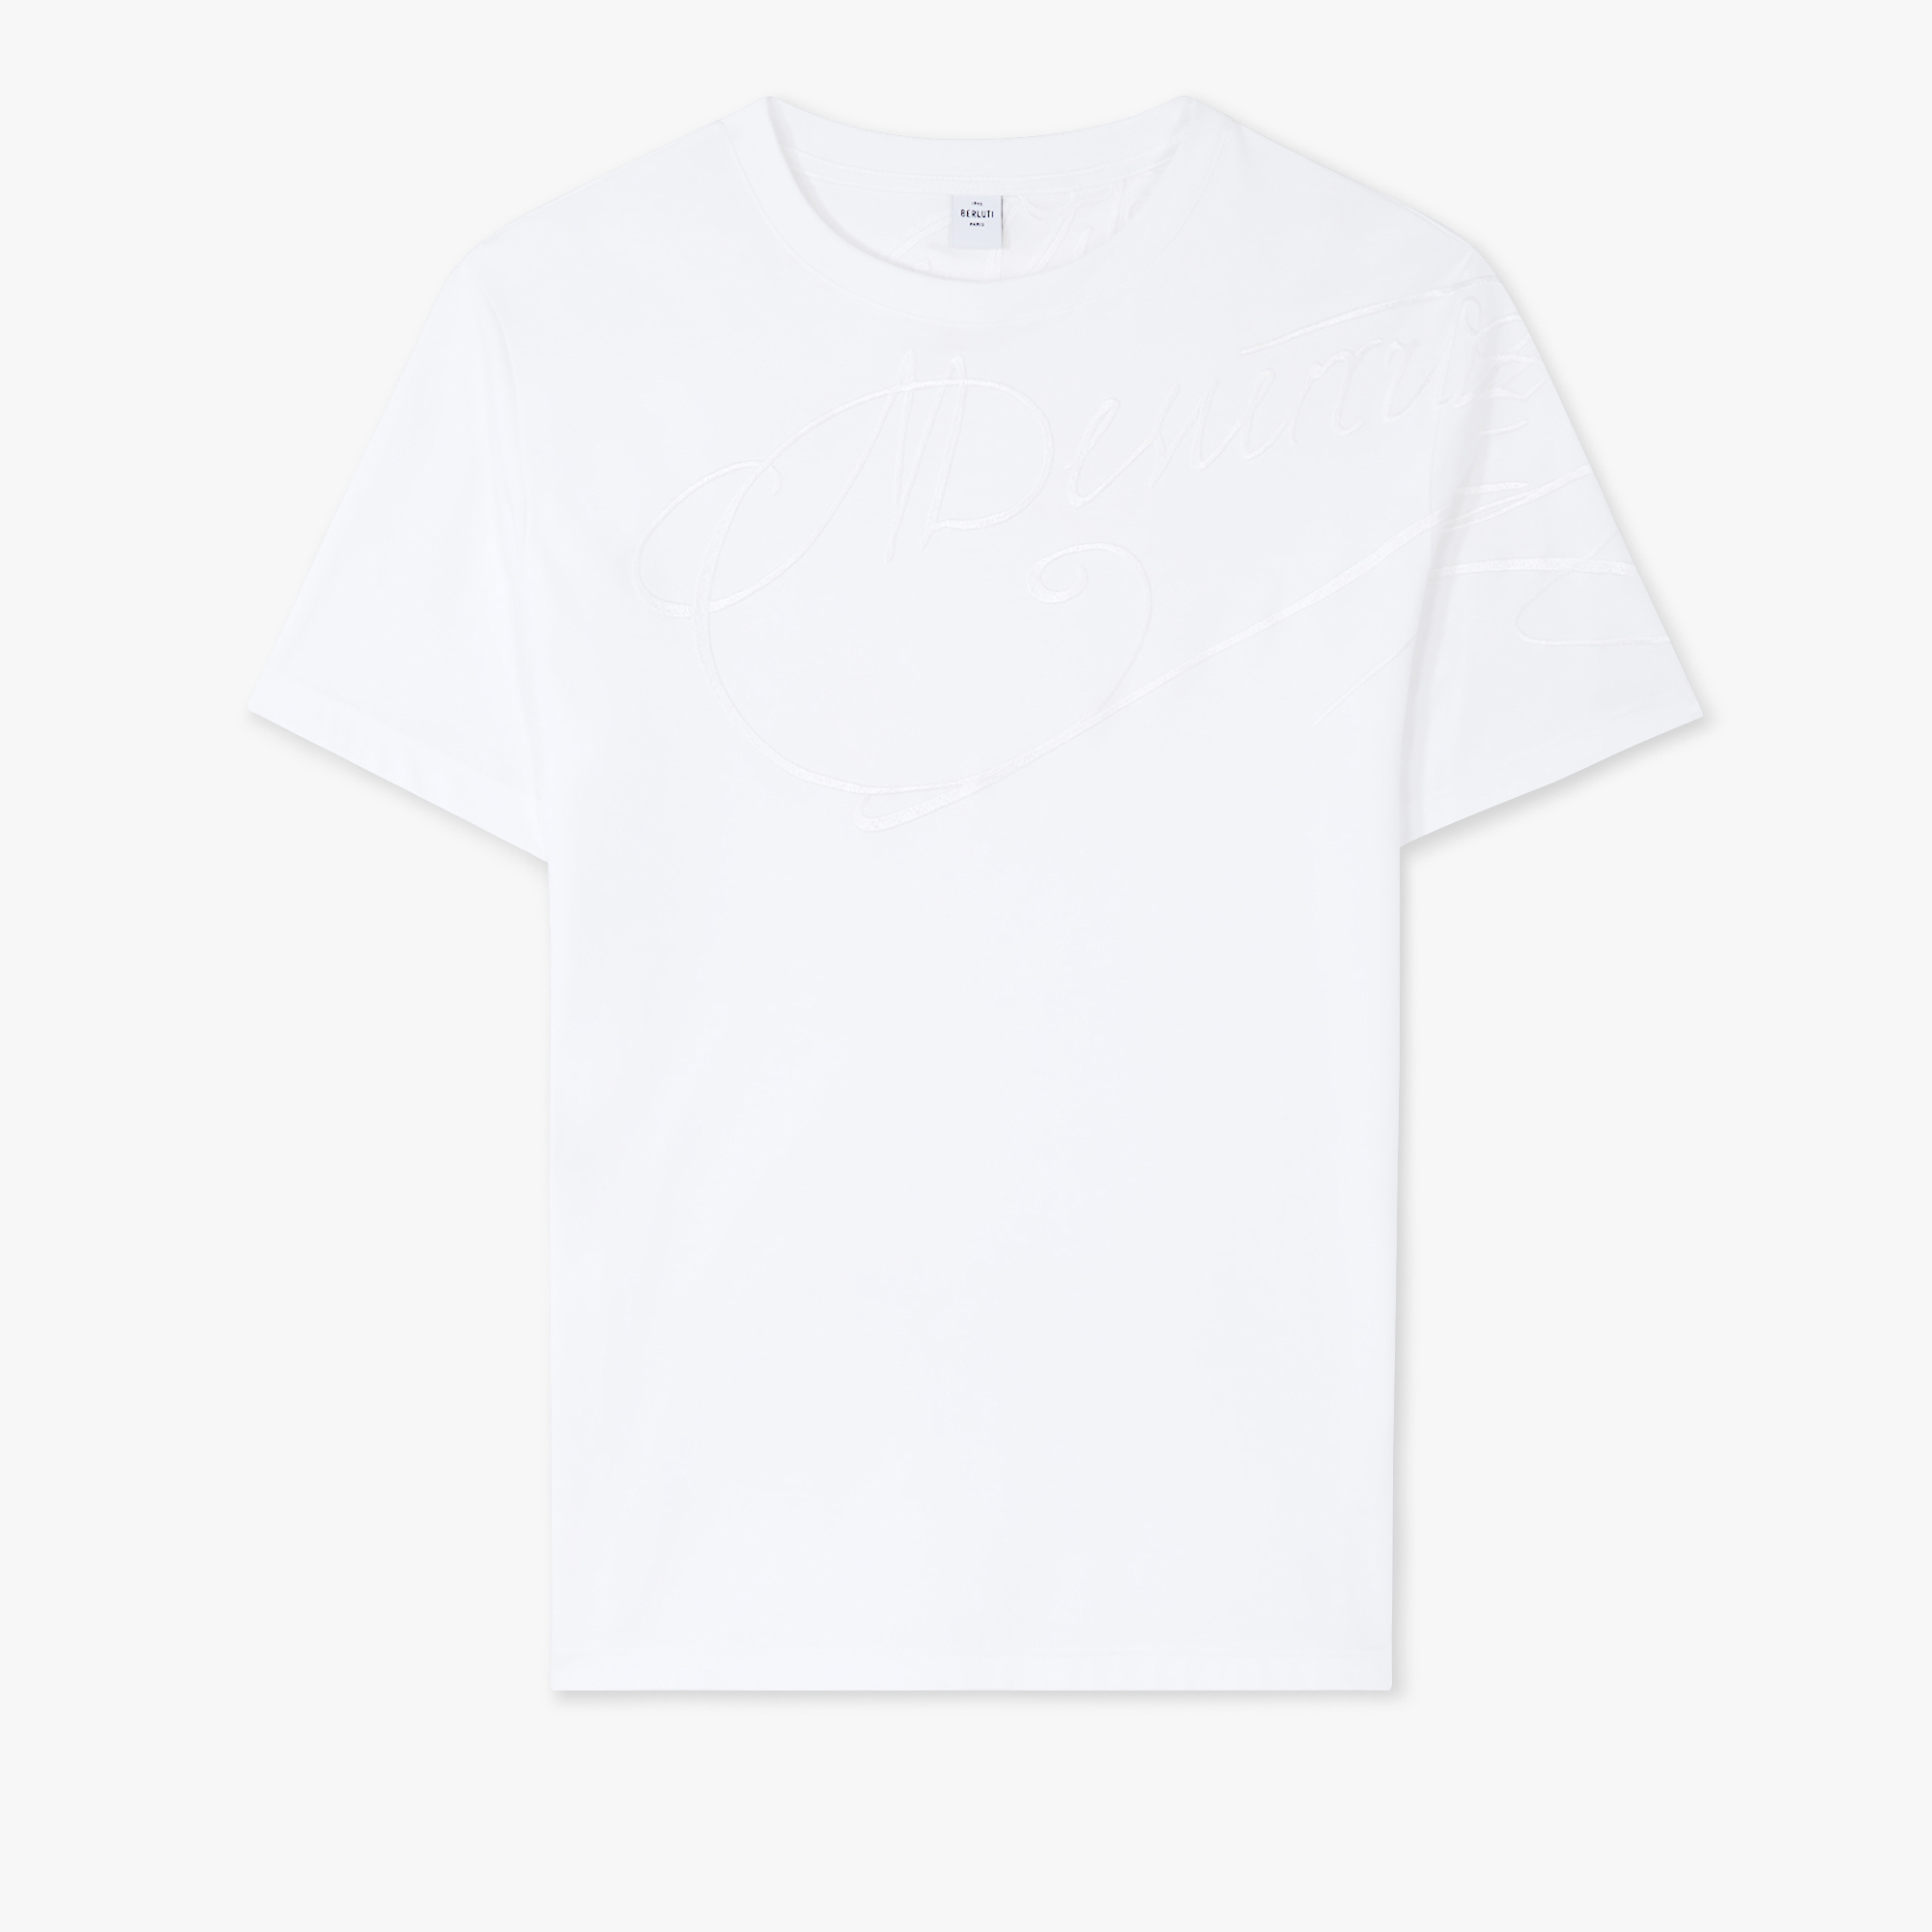 スクリット刺繍 Tシャツ, BLANC OPTIQUE, hi-res